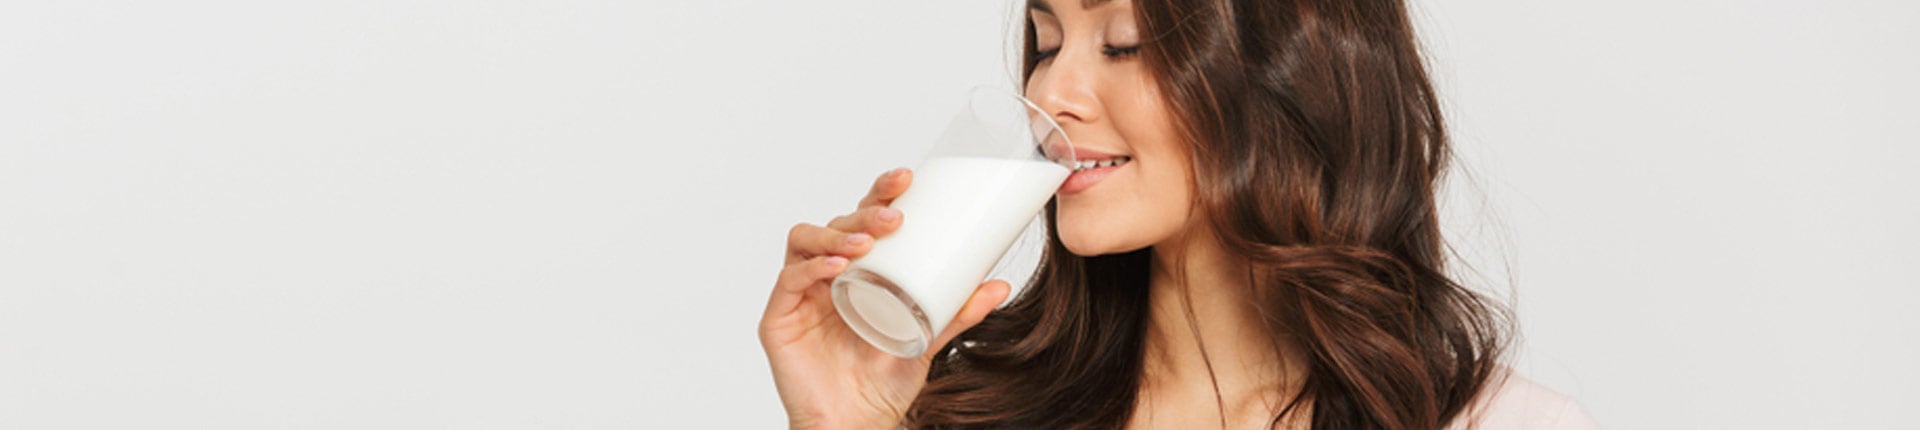 Mleko i jogurty, a insulinooporność